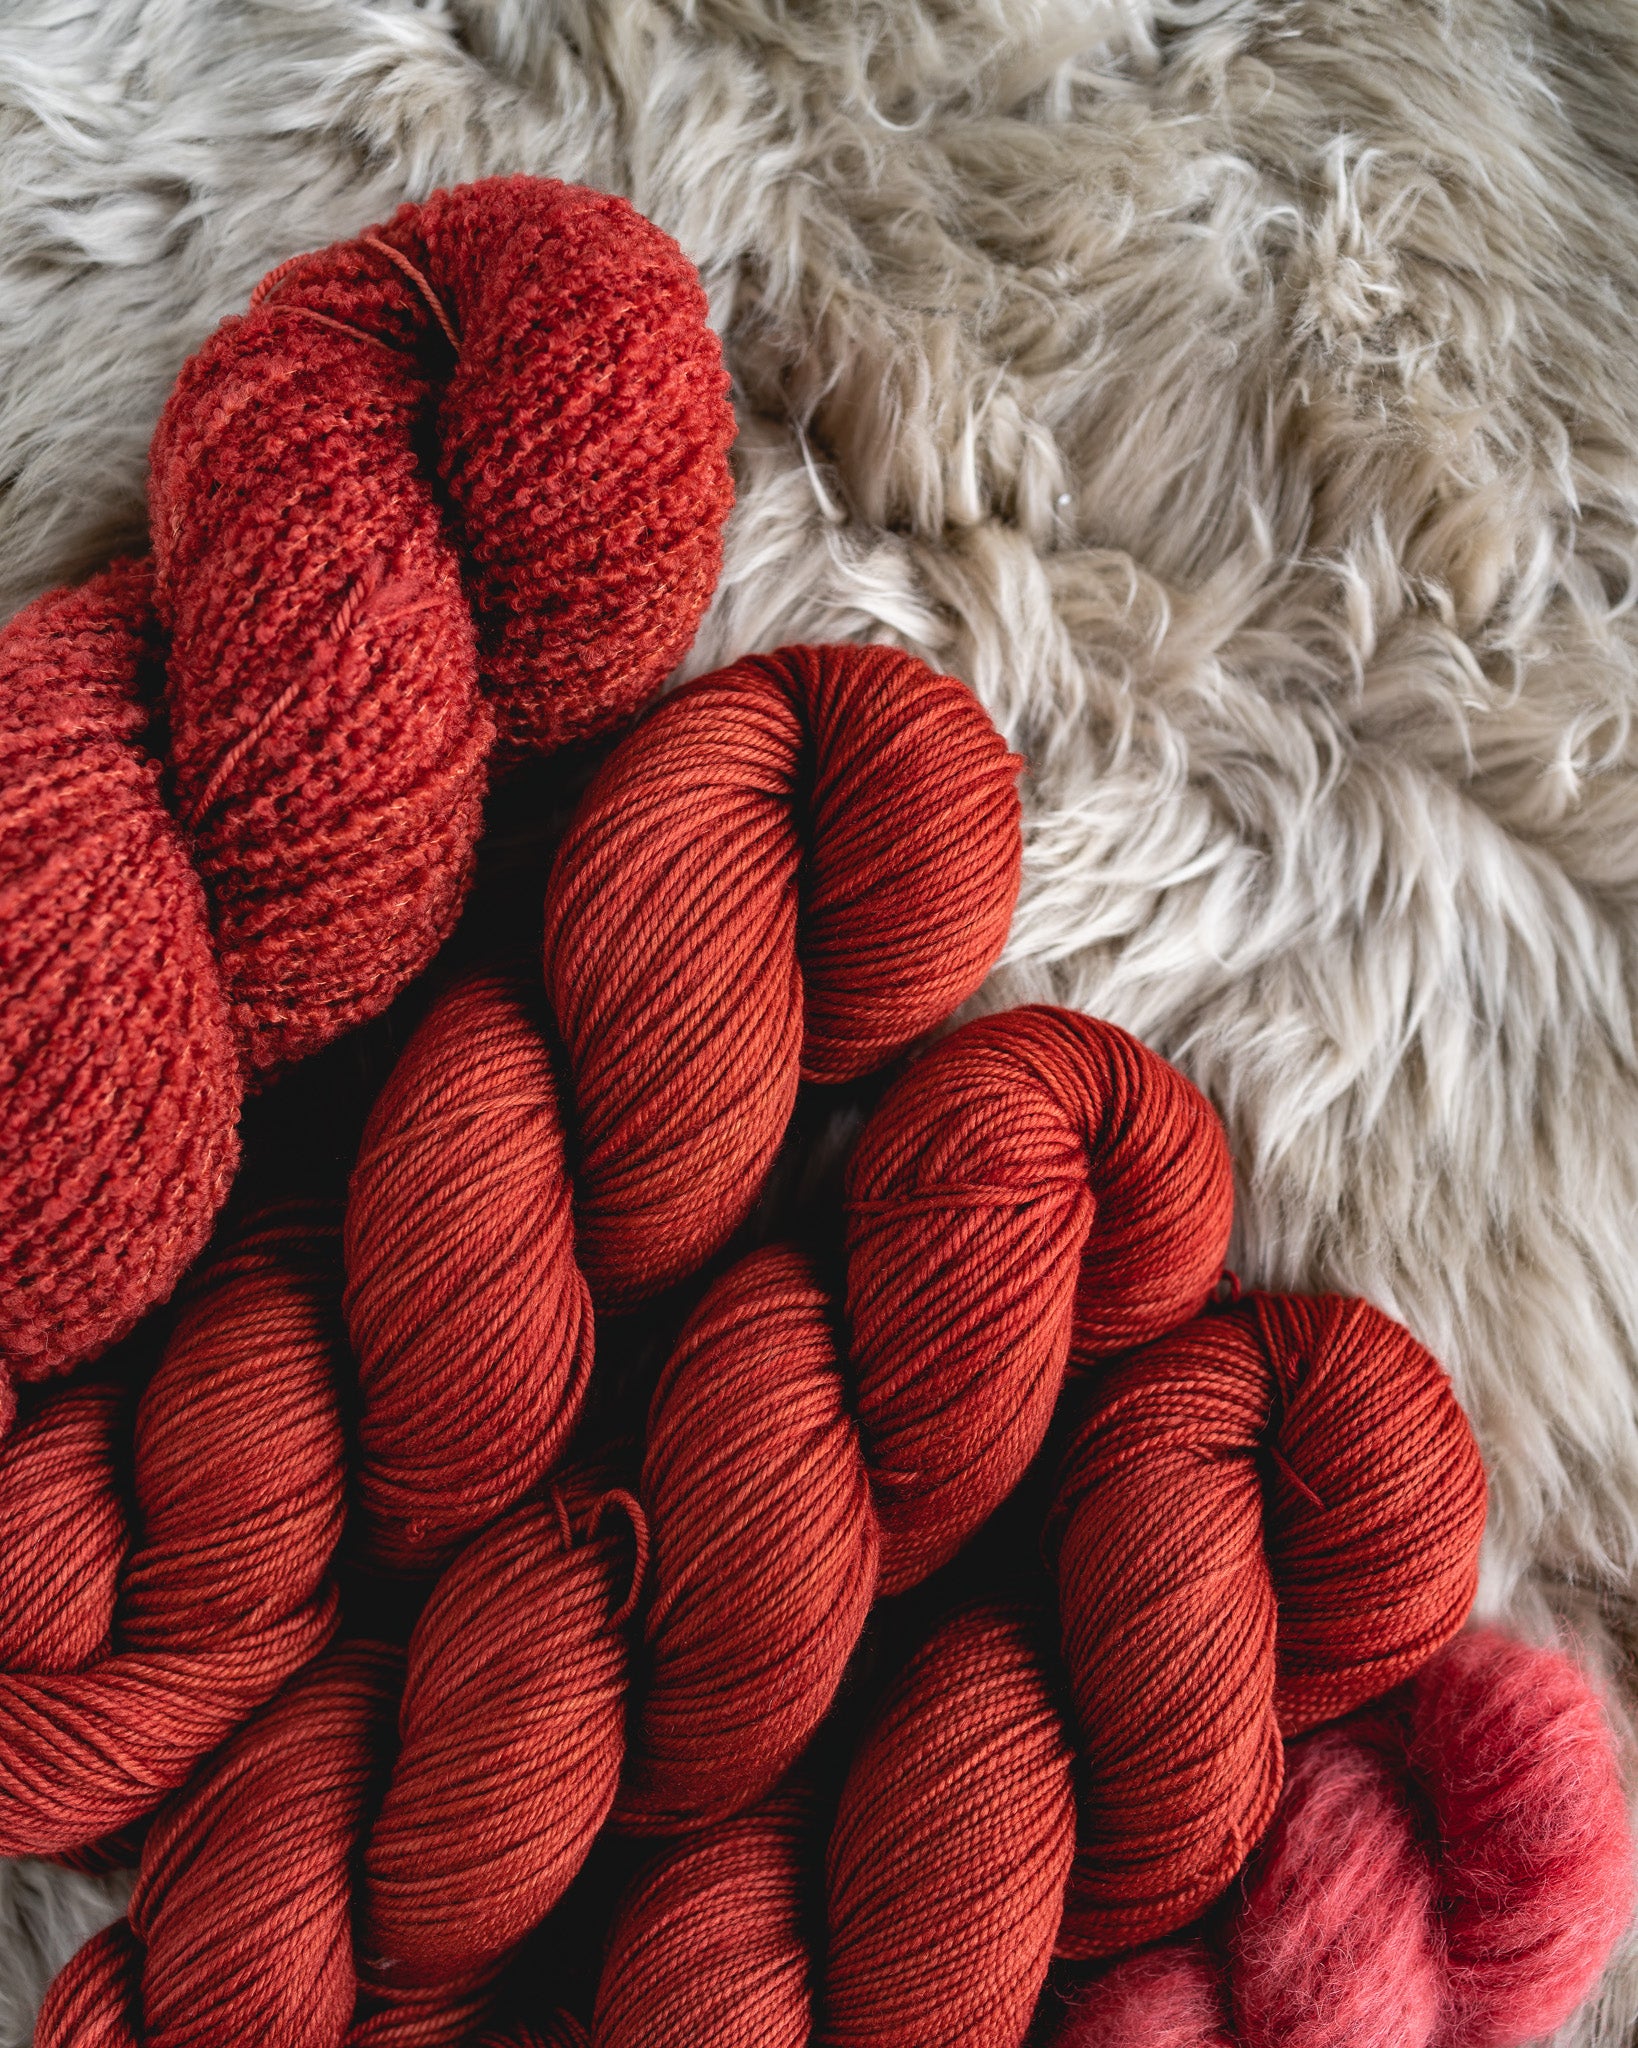 Yarn Storage Dreams • Sewrella